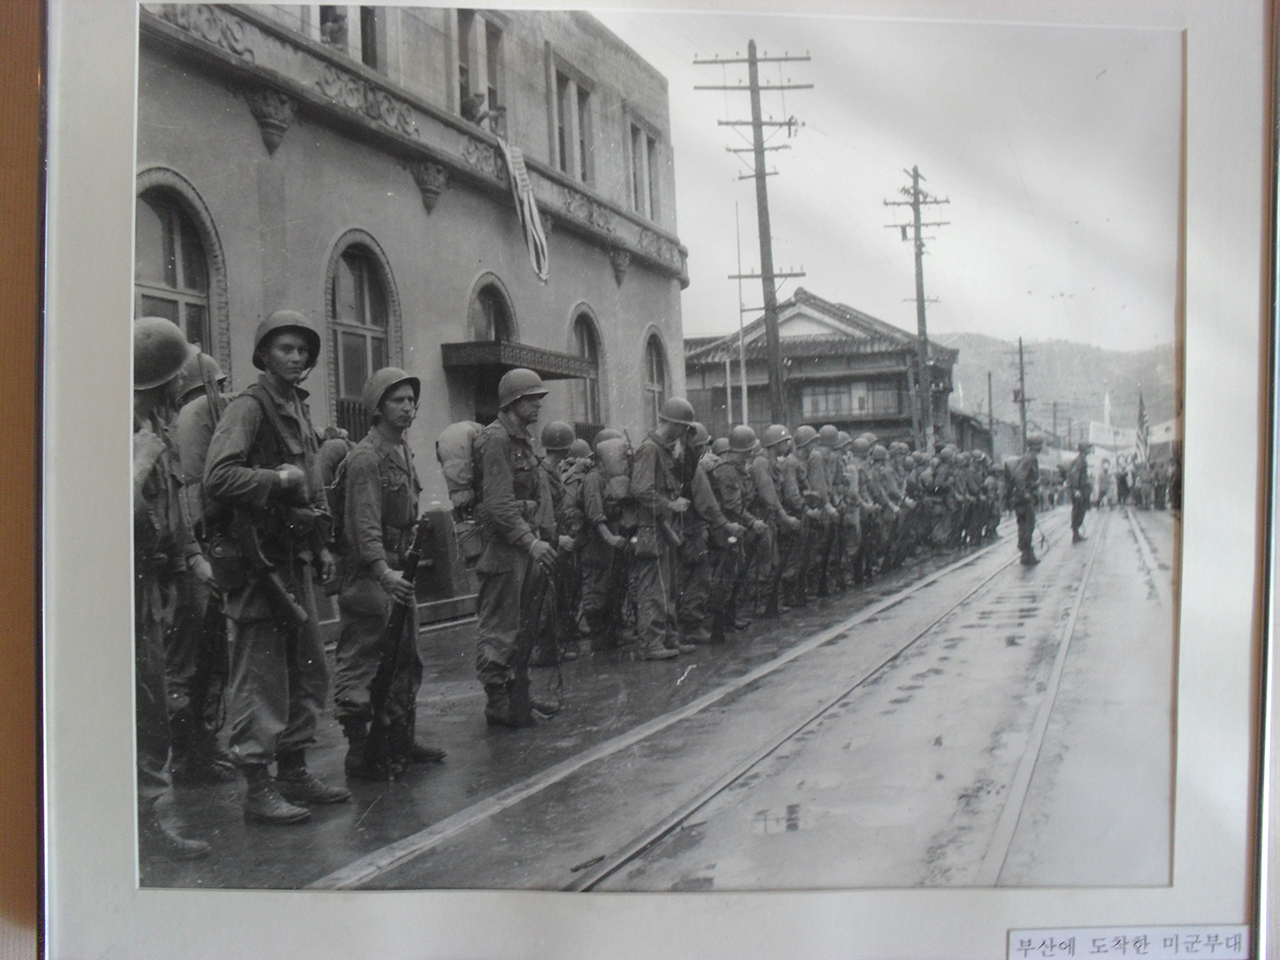 미국이 제3단계에 진입한 지 얼마 뒤인 1950년 부산 시내에 상륙한 미군. 부산시 서구 부민동의 임시수도기념관에서 찍은 사진.  